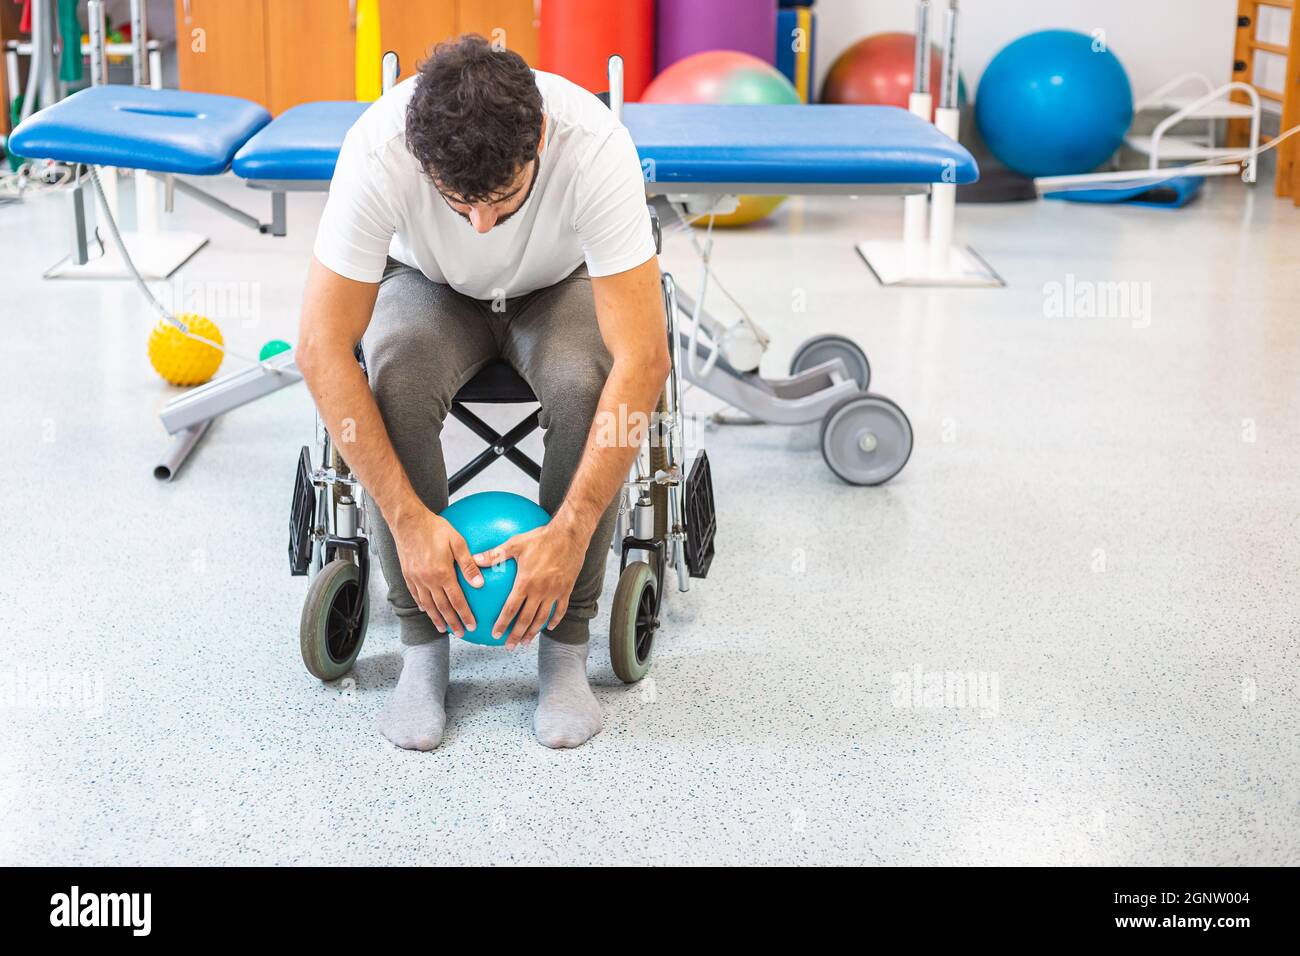 https://c8.alamy.com/compes/2gnw004/hombre-discapacitado-sentado-en-una-silla-de-ruedas-haciendo-un-ejercicio-con-una-pelota-pilates-mas-pequena-en-el-centro-de-rehabilitacion-fisioterapeutica-2gnw004.jpg